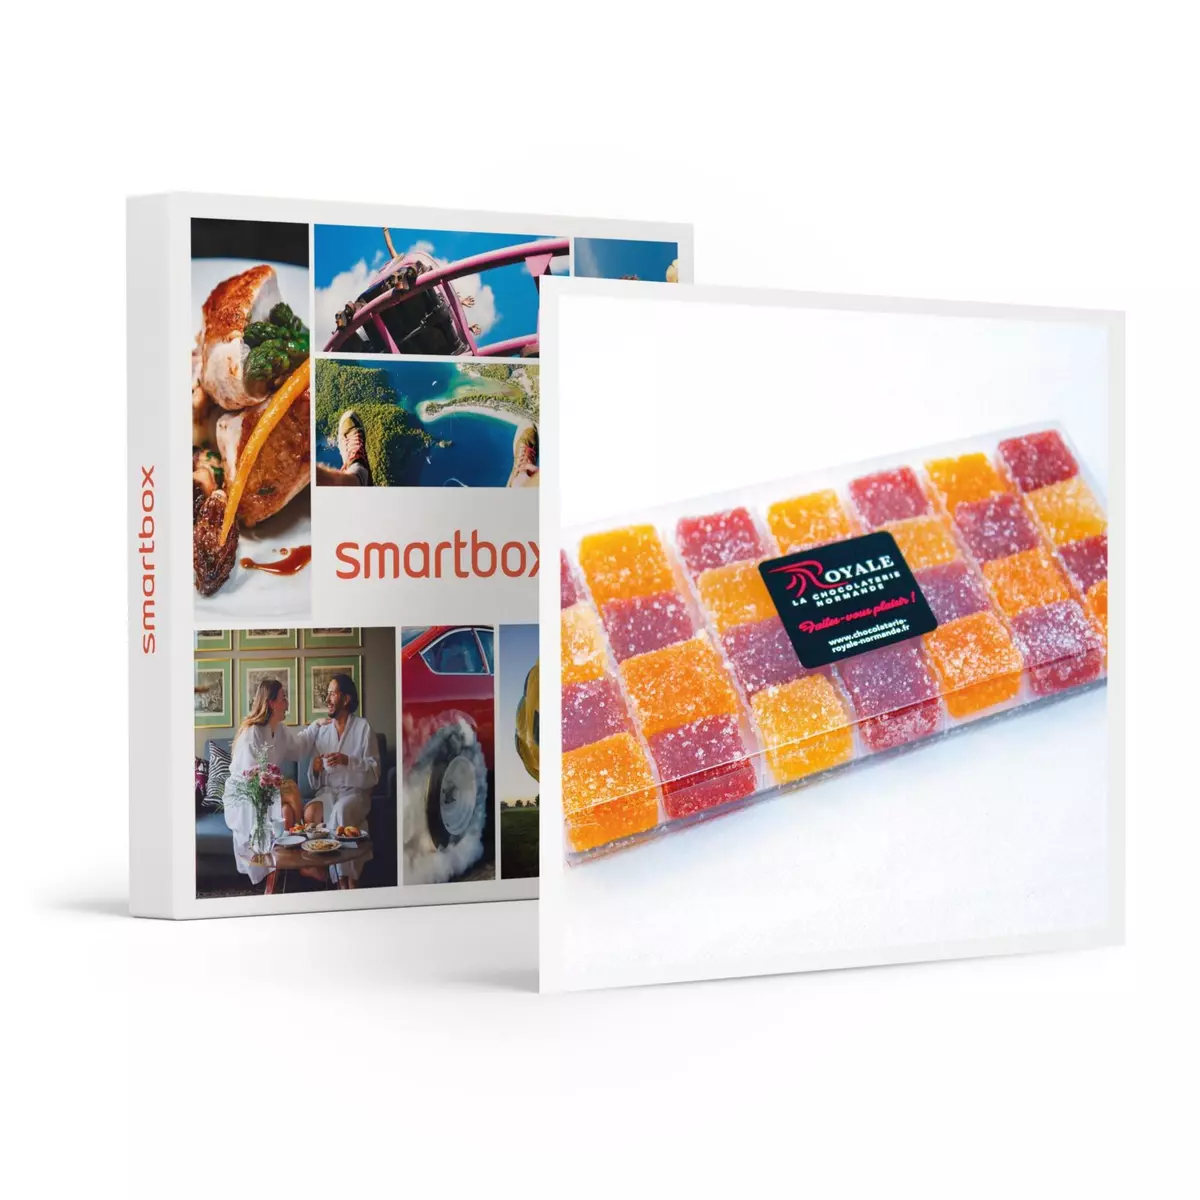 Smartbox Coffret avec assortiment de douceurs chocolats et confiseries 100 % artisanal - Coffret Cadeau Gastronomie